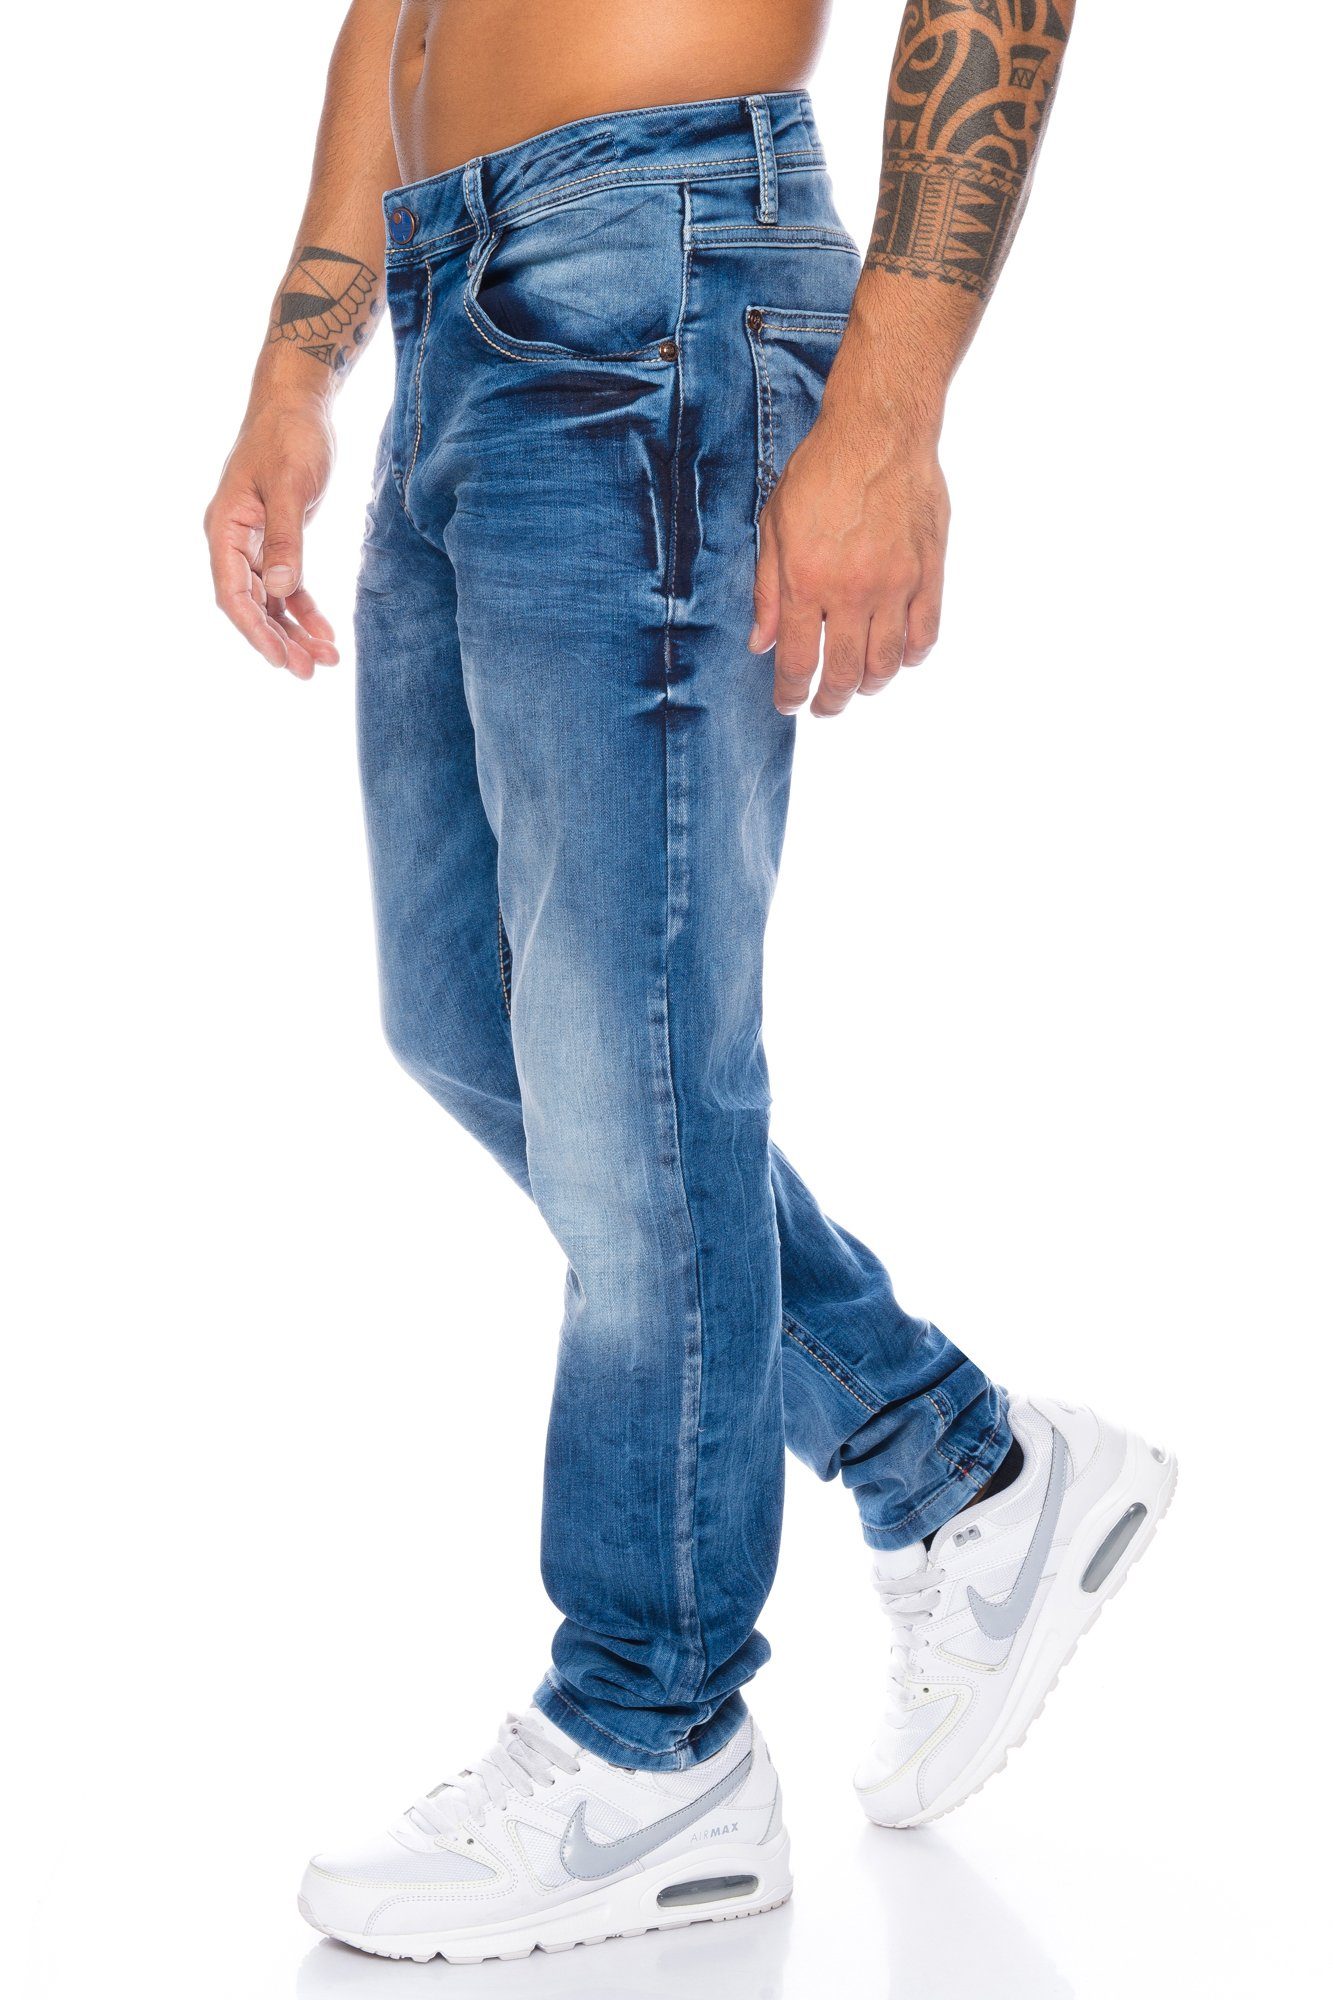 & mit Cipo Herren Jeans Slim-fit-Jeans Dezente im Hose Baxx Nähte dicke dezenten casual Look Nähten dicken